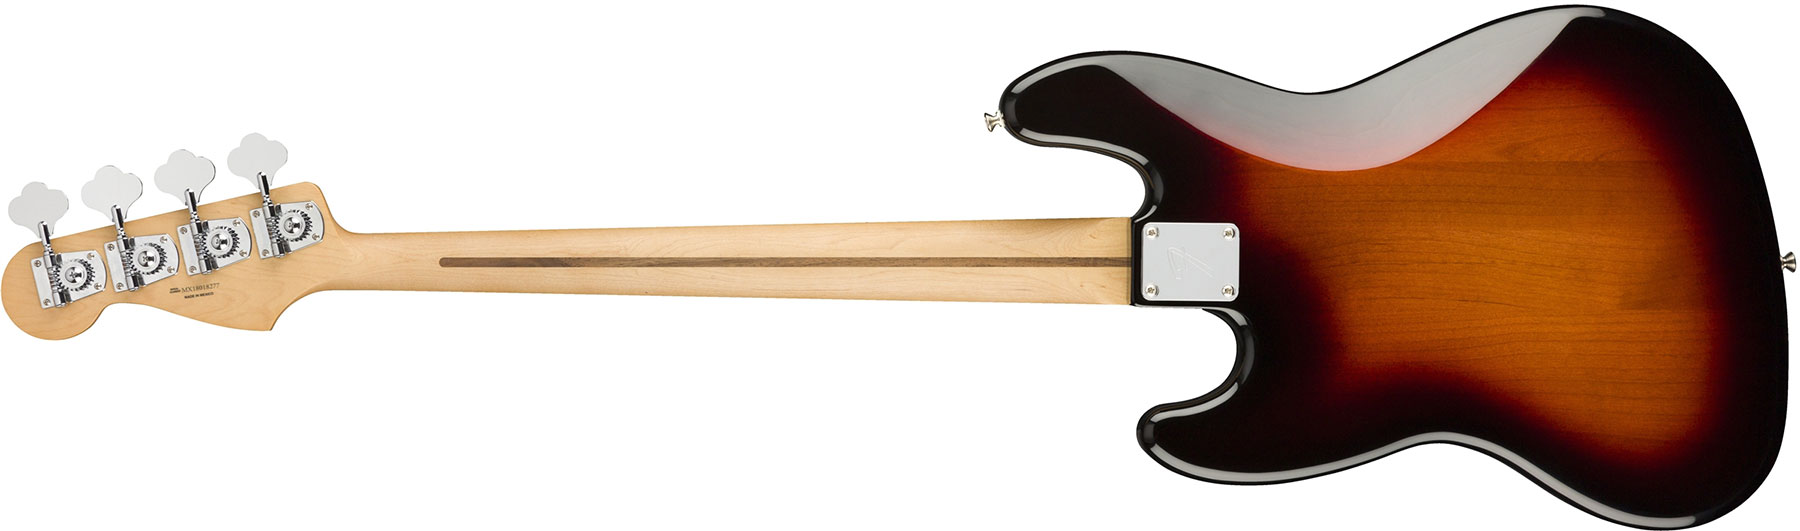 Fender Jazz Bass Player Mex Mn - 3-color Sunburst - Bajo eléctrico de cuerpo sólido - Variation 1